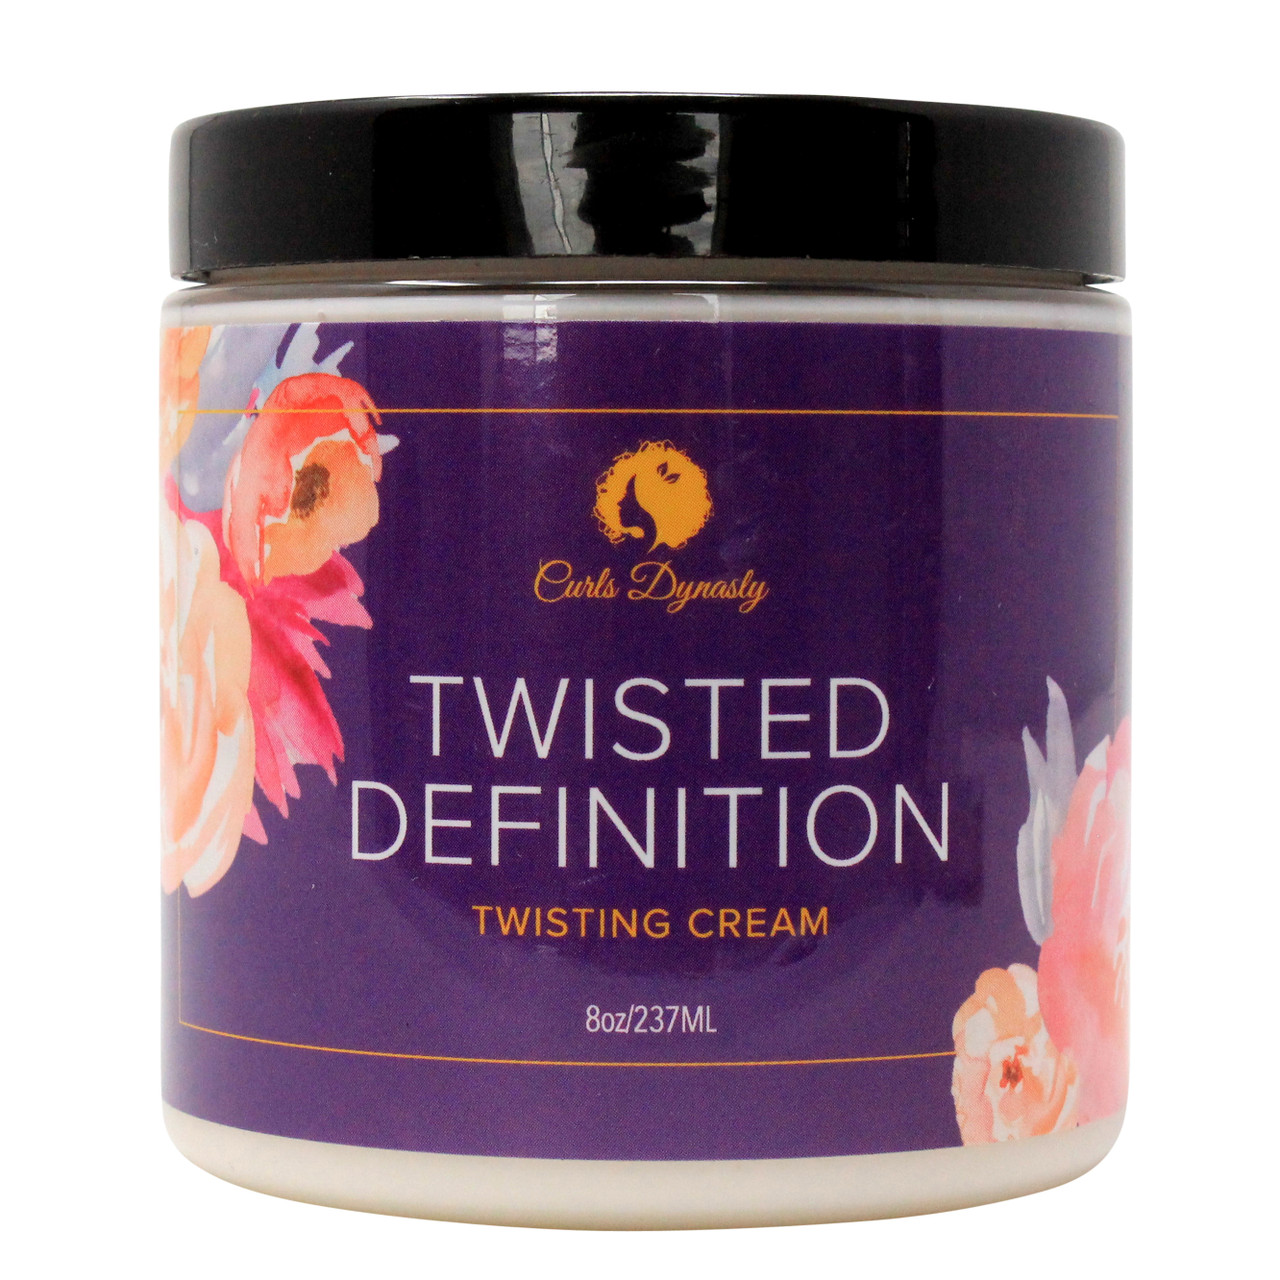 Curls Dynasty | Twisted Definition Twisting Cream (8oz)